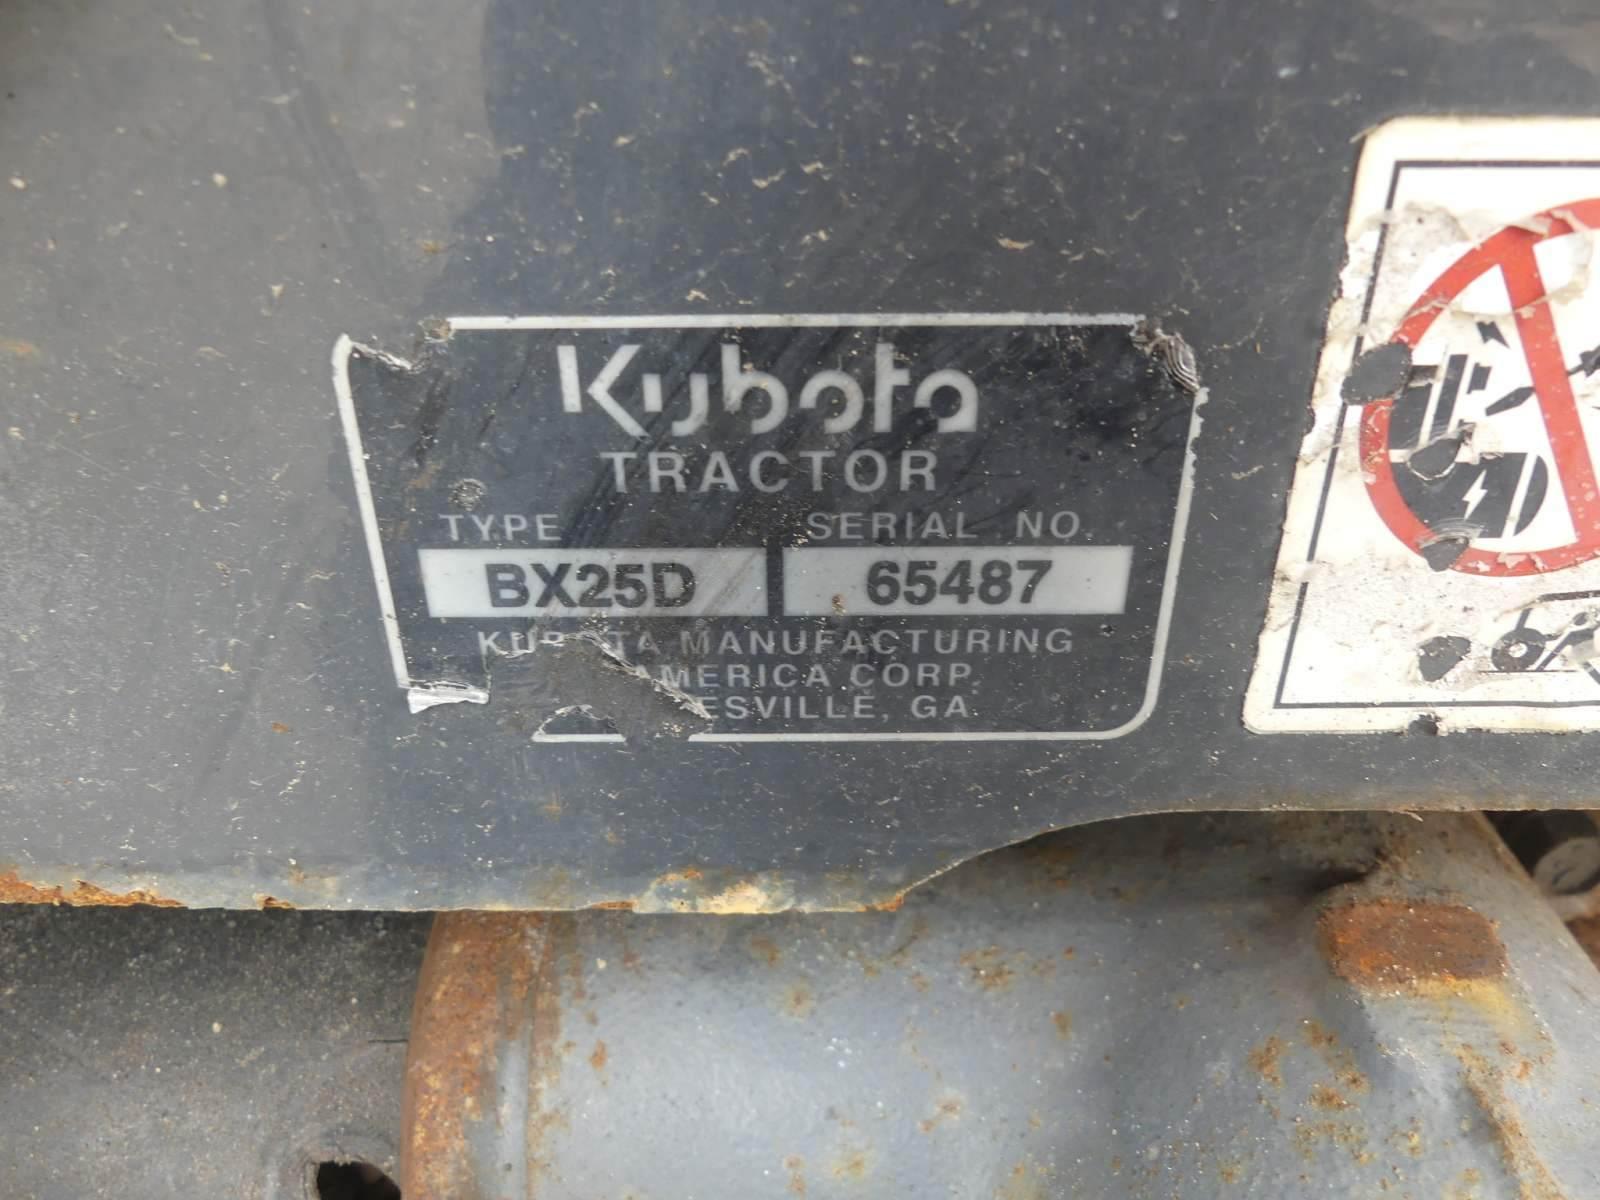 Kubota BX25D MFWD Tractor, s/n 65487: Front Loader w/ Bkt., Backhoe Attachm